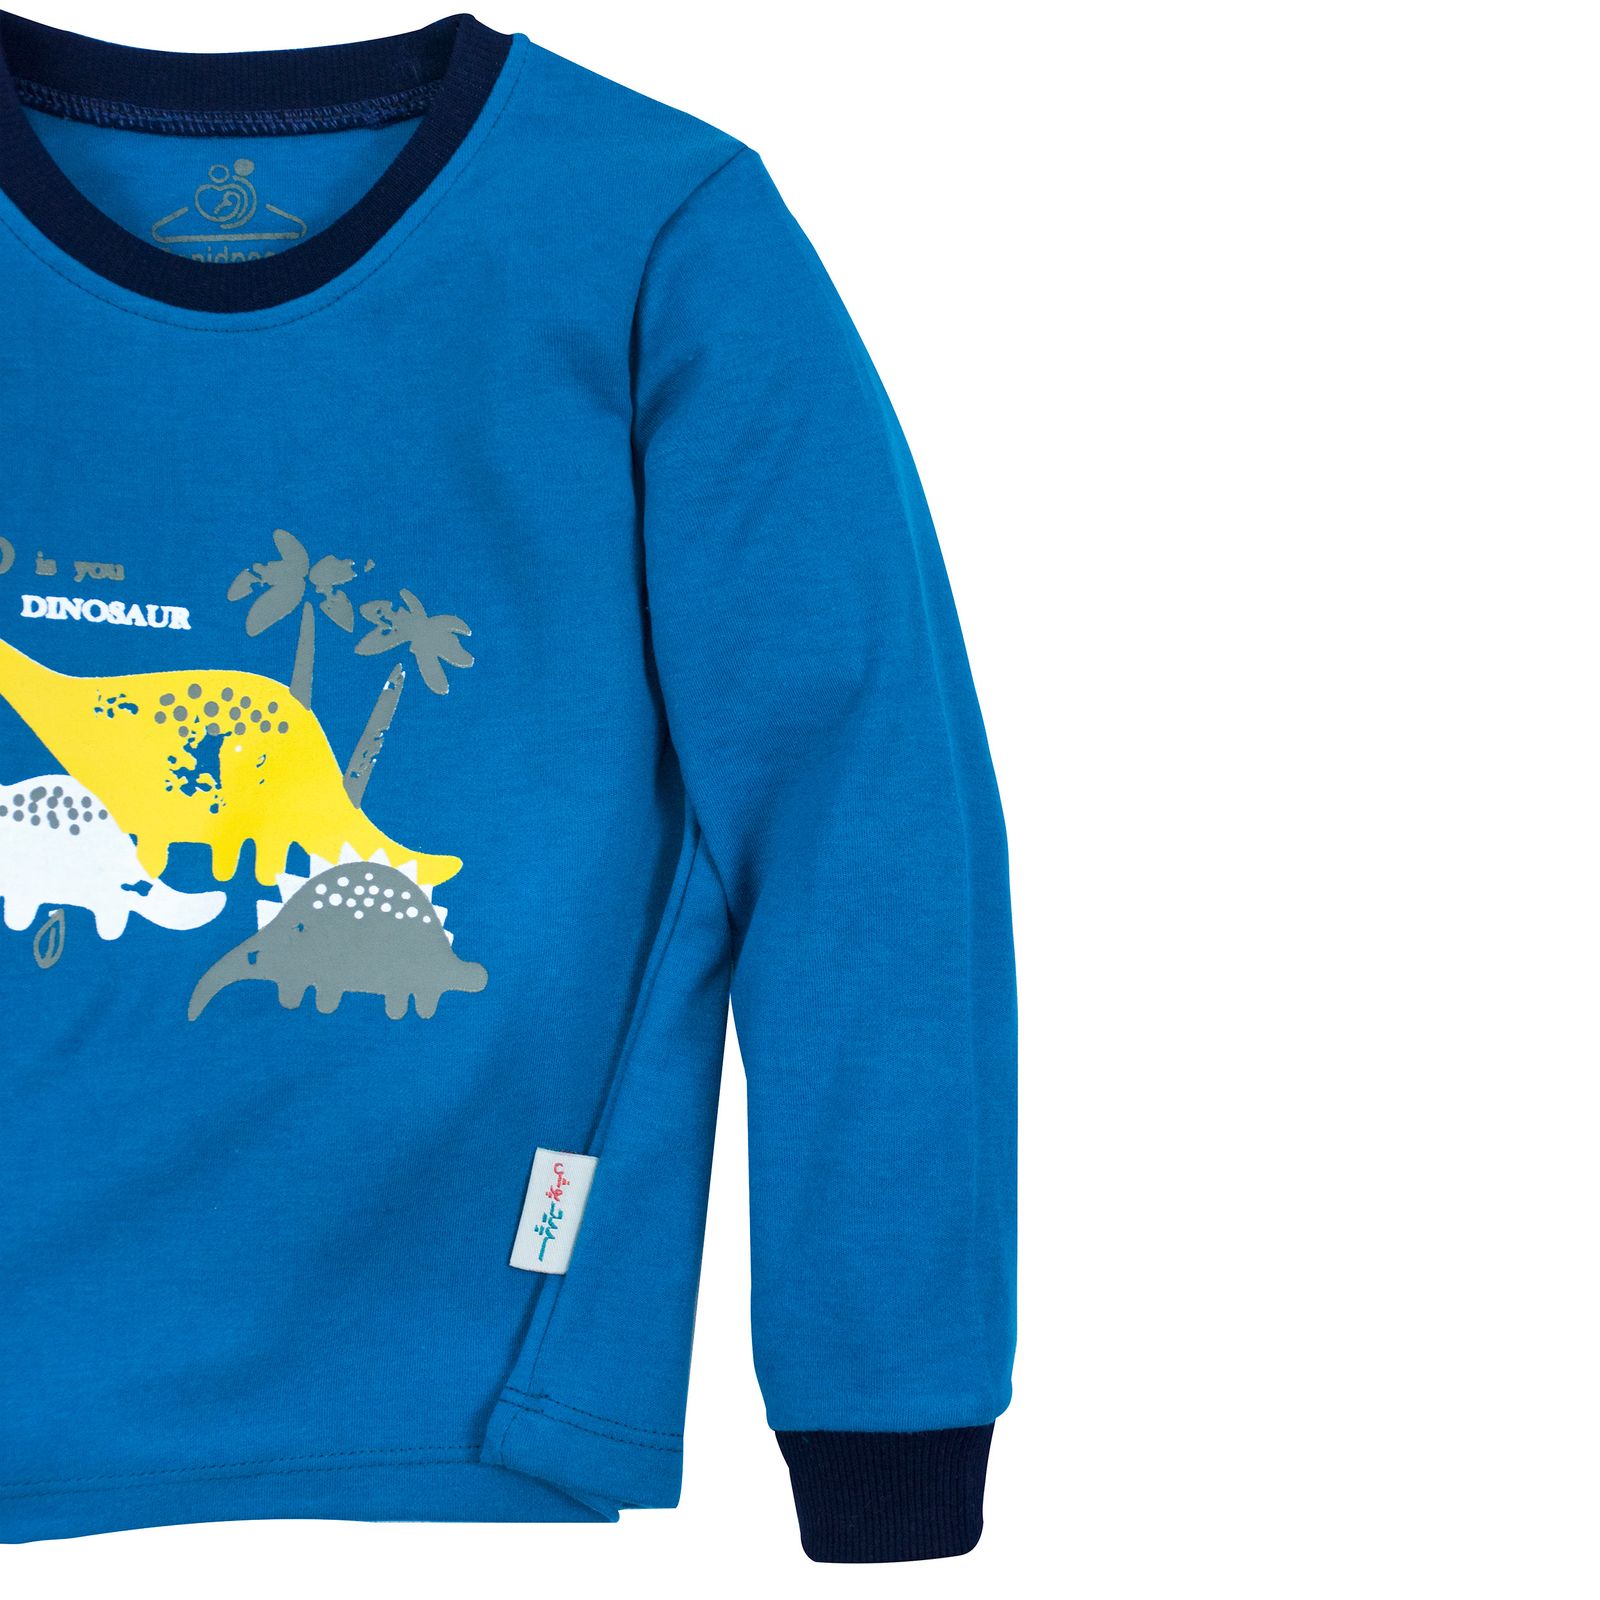 ست تی شرت و شلوار بچگانه سپیدپوش مدل دایناسور کد 7430 -  - 4